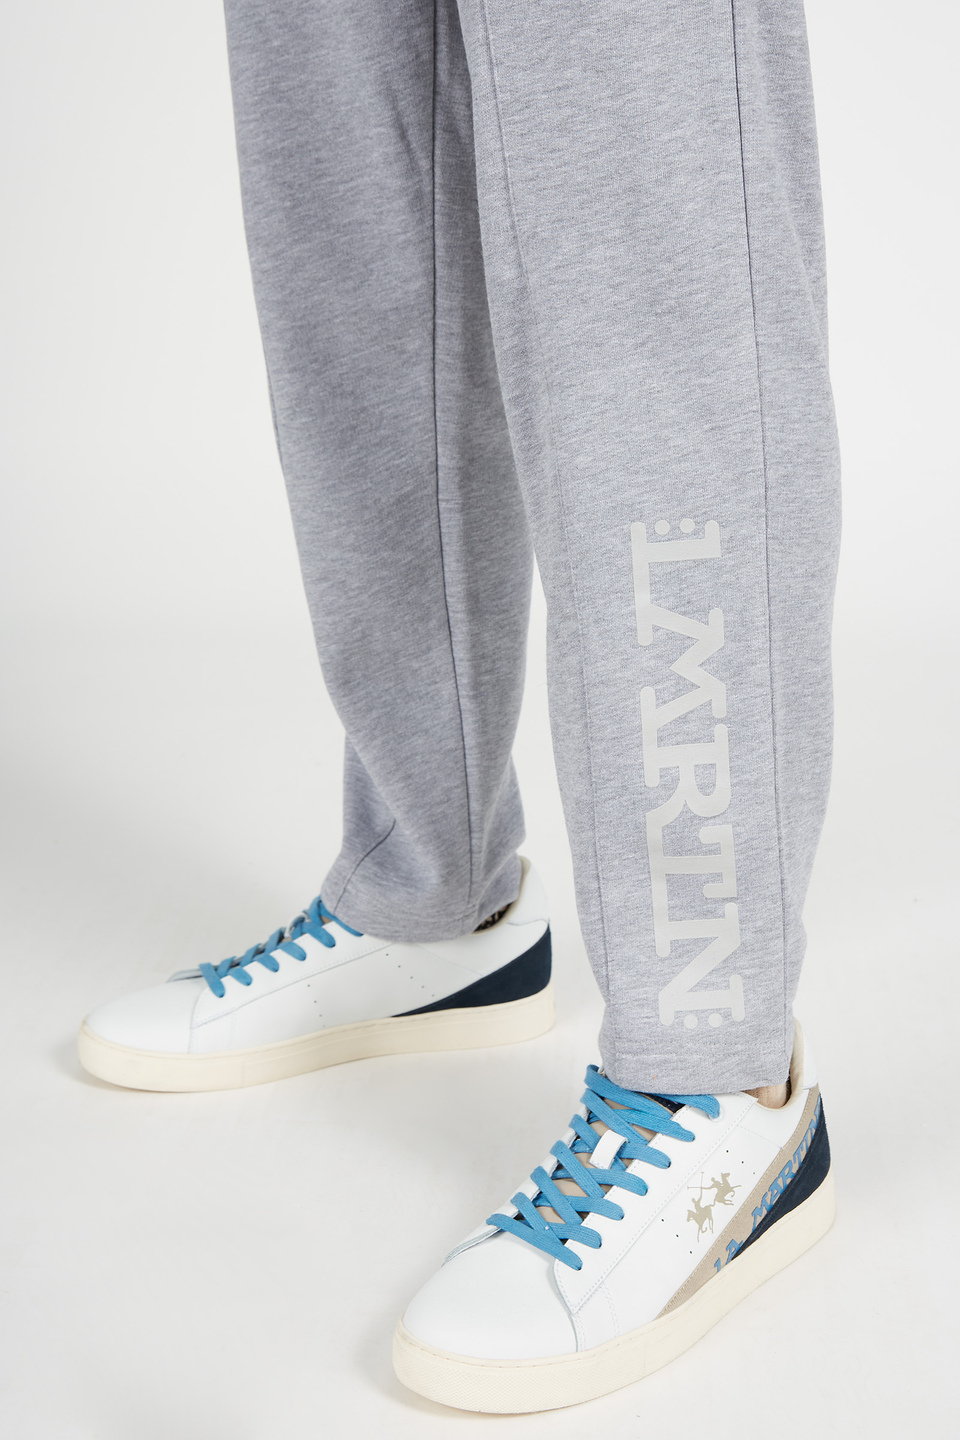 Pantalone da uomo in cotone modello jogger con coulisse | La Martina - Official Online Shop